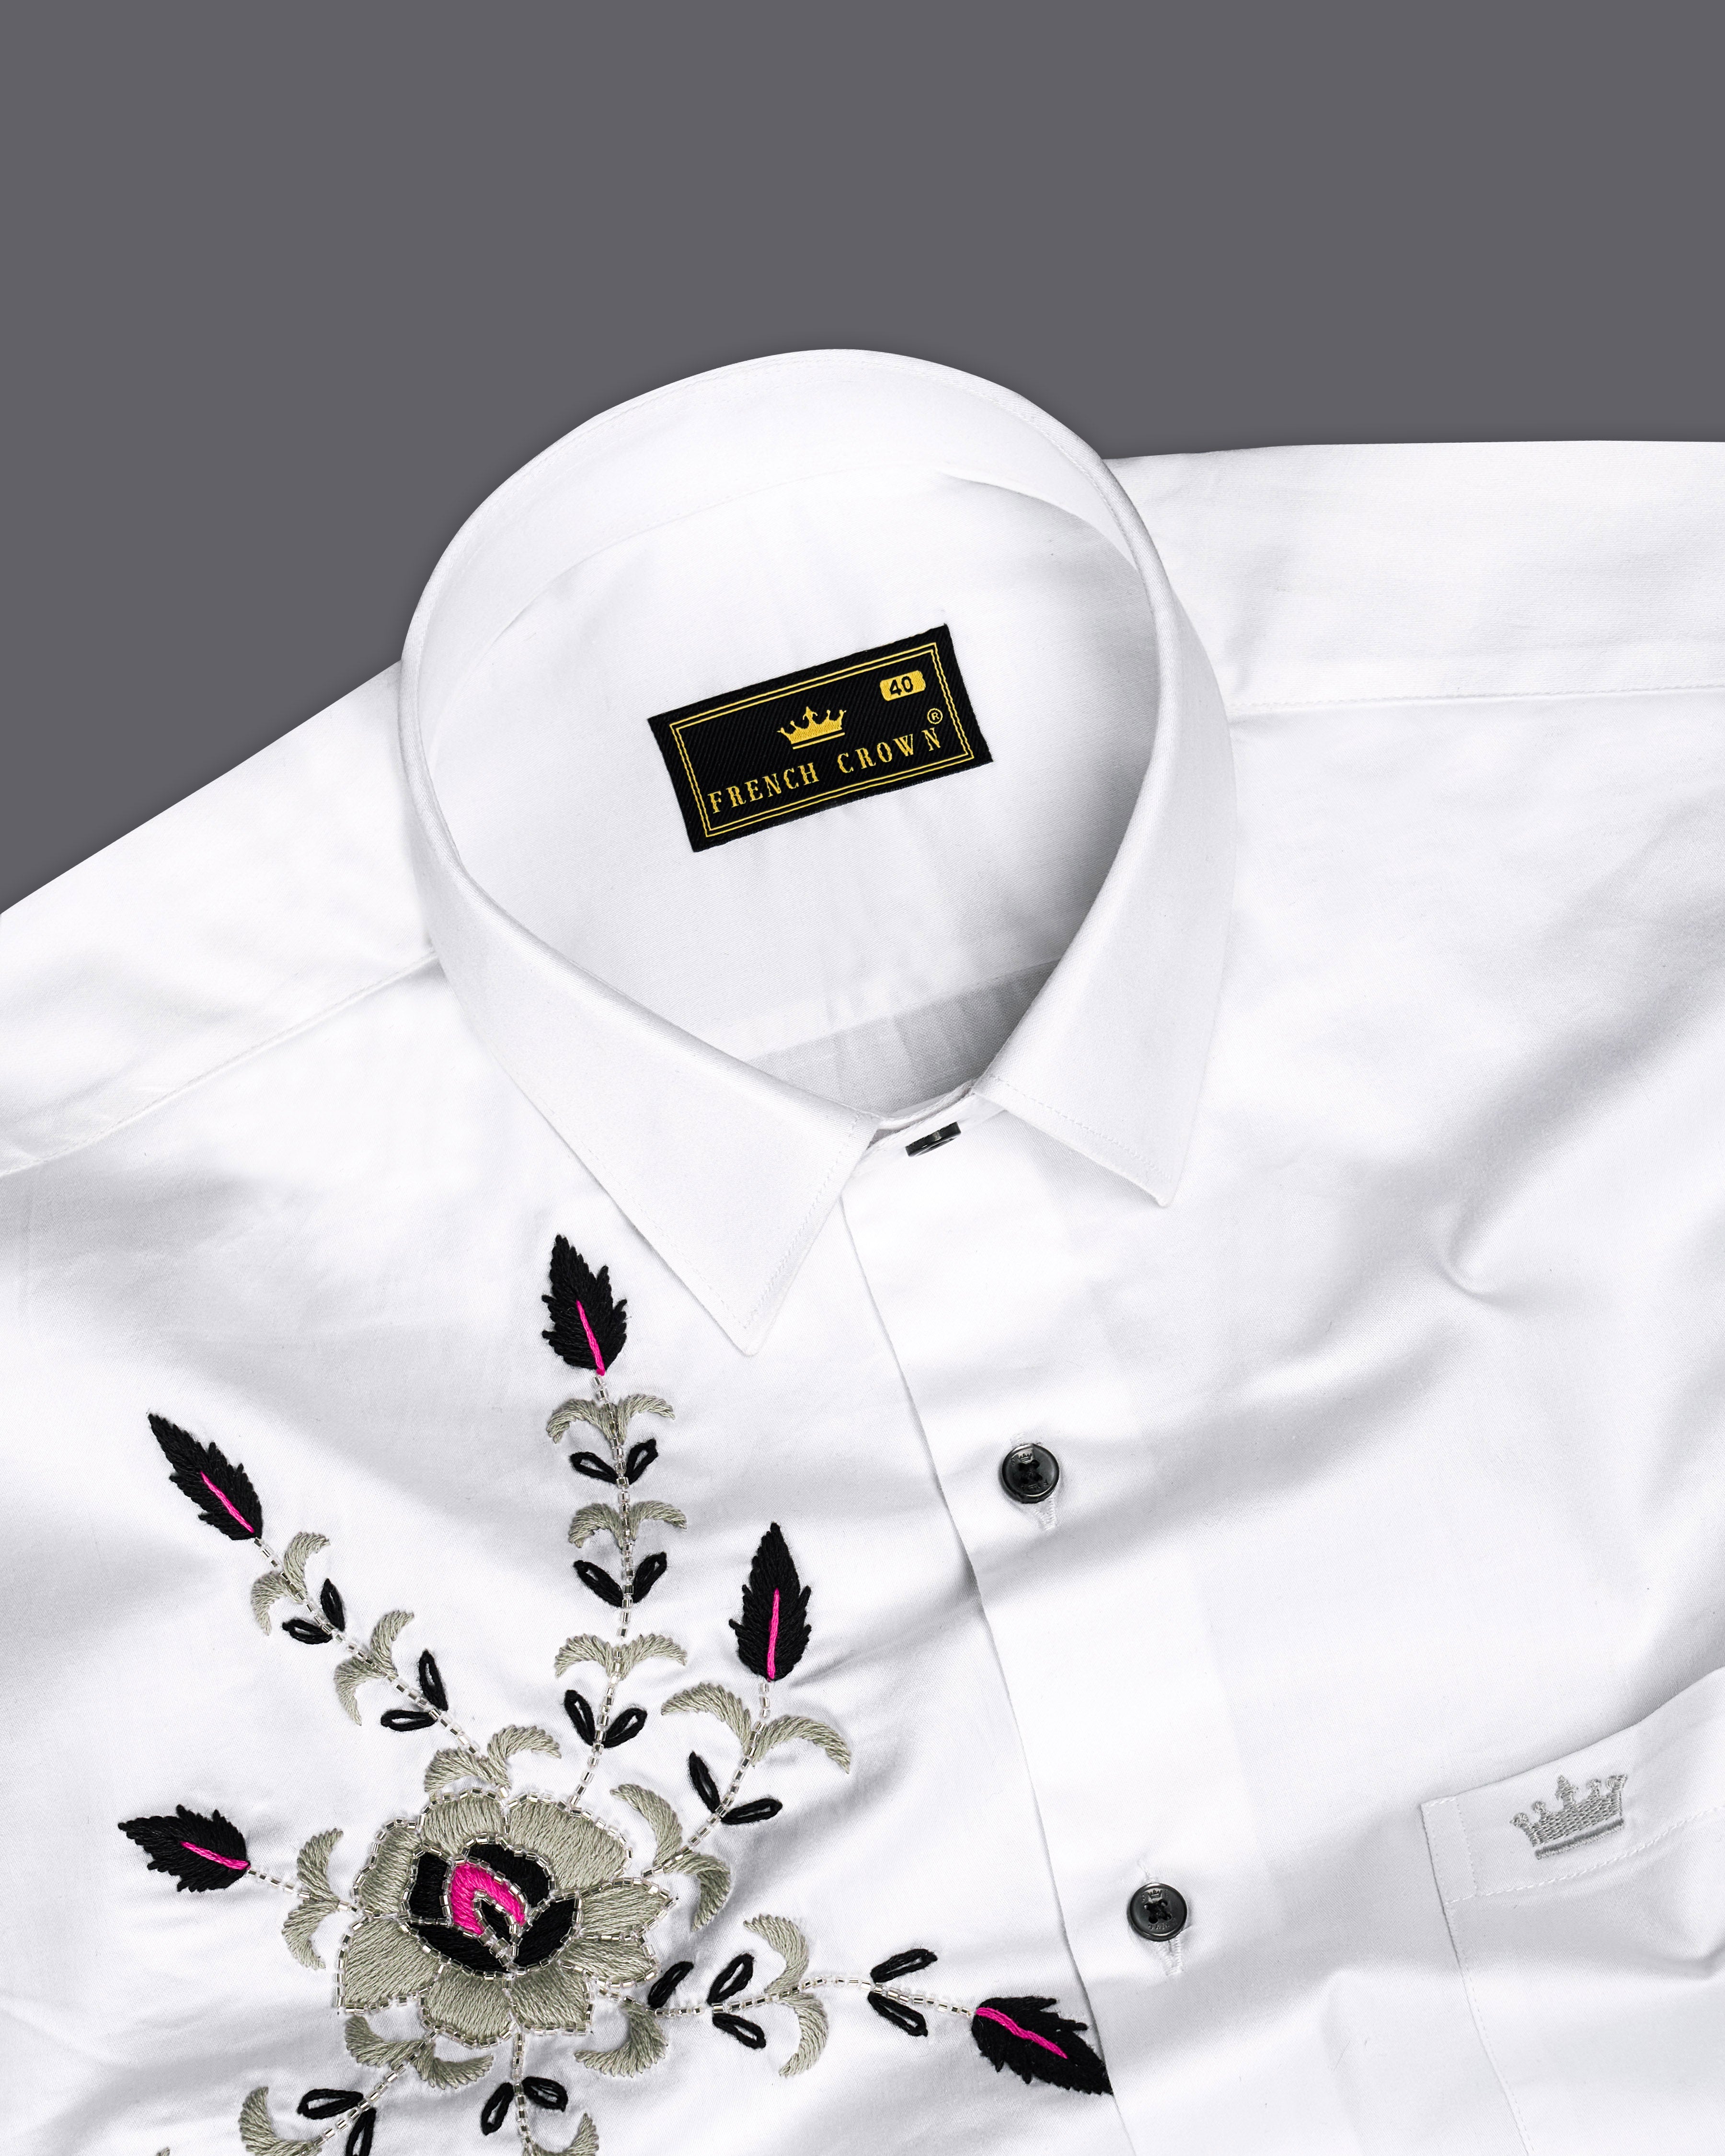 Bright White Subtle Sheen Hand Embroidered Super Soft Premium Cotton Designer Shirt 1062-BLK-E054-38,1062-BLK-E054-H-38,1062-BLK-E054-39,1062-BLK-E054-H-39,1062-BLK-E054-40,1062-BLK-E054-H-40,1062-BLK-E054-42,1062-BLK-E054-H-42,1062-BLK-E054-44,1062-BLK-E054-H-44,1062-BLK-E054-46,1062-BLK-E054-H-46,1062-BLK-E054-48,1062-BLK-E054-H-48,1062-BLK-E054-50,1062-BLK-E054-H-50,1062-BLK-E054-52,1062-BLK-E054-H-52